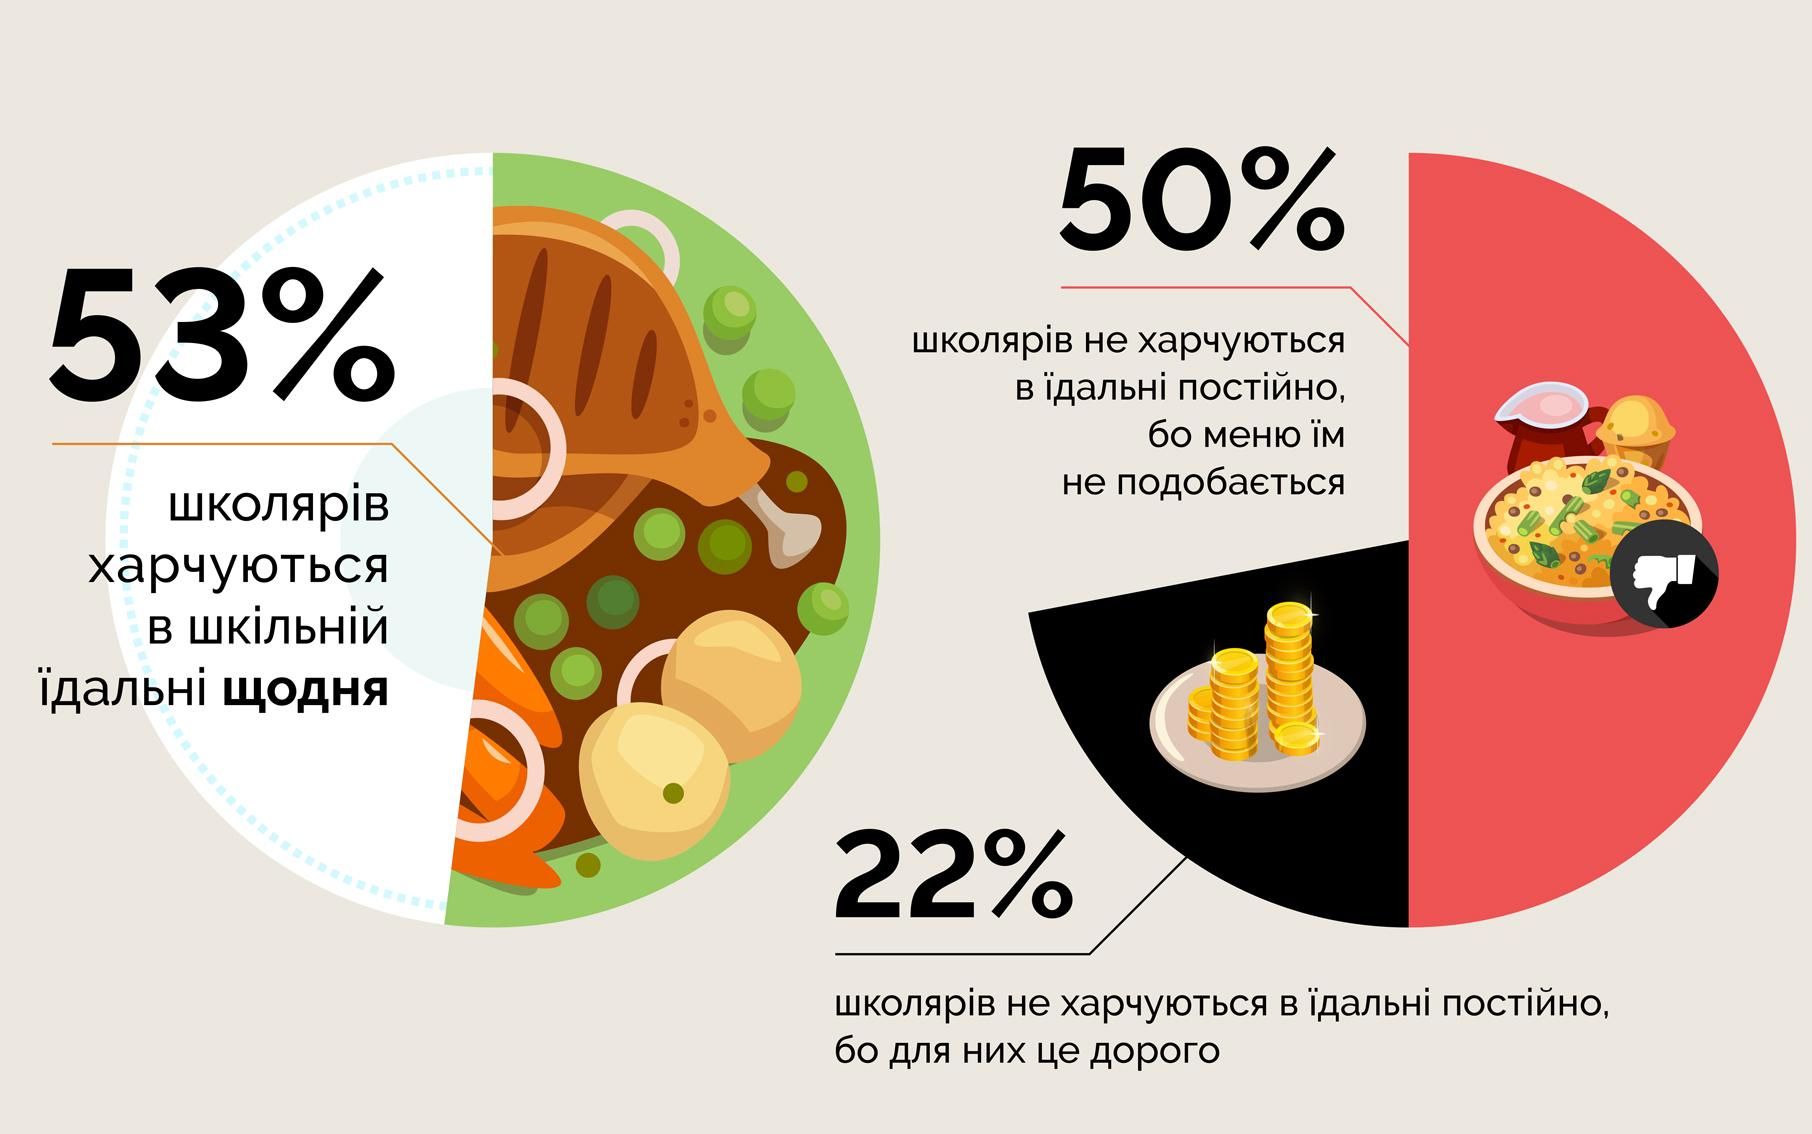 Що їдять українські школярі: результати дослідження в картинках від ЮНІСЕФ - Україна новини - Освіта